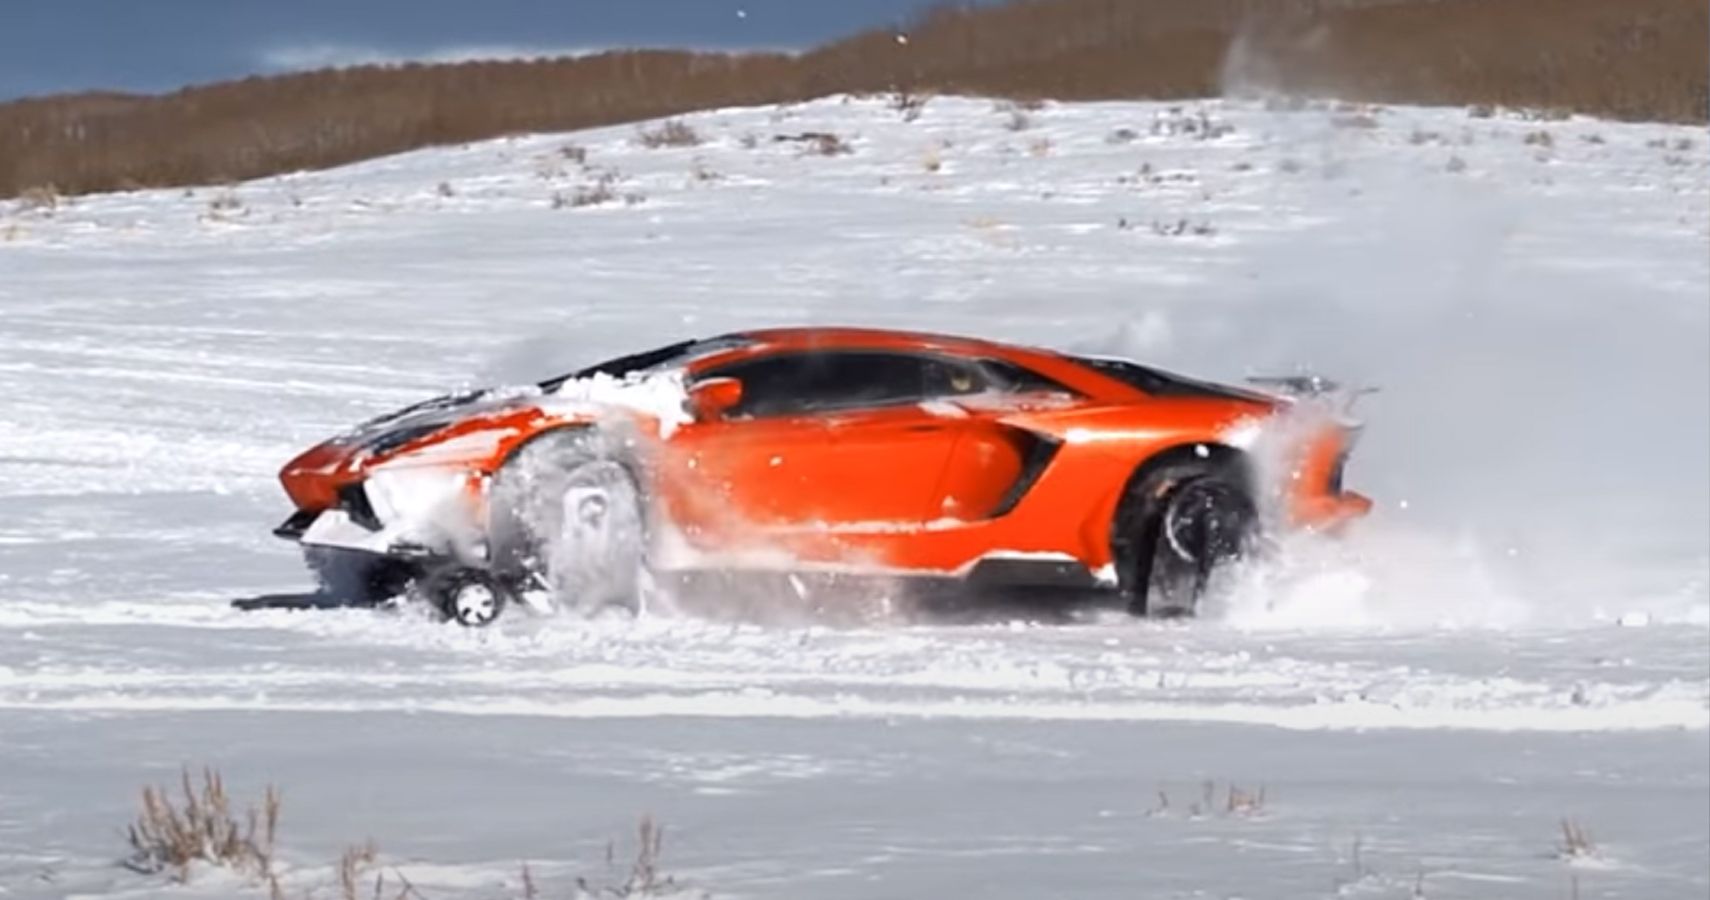 Lamborghini on snow tracks hits the Utah slopes